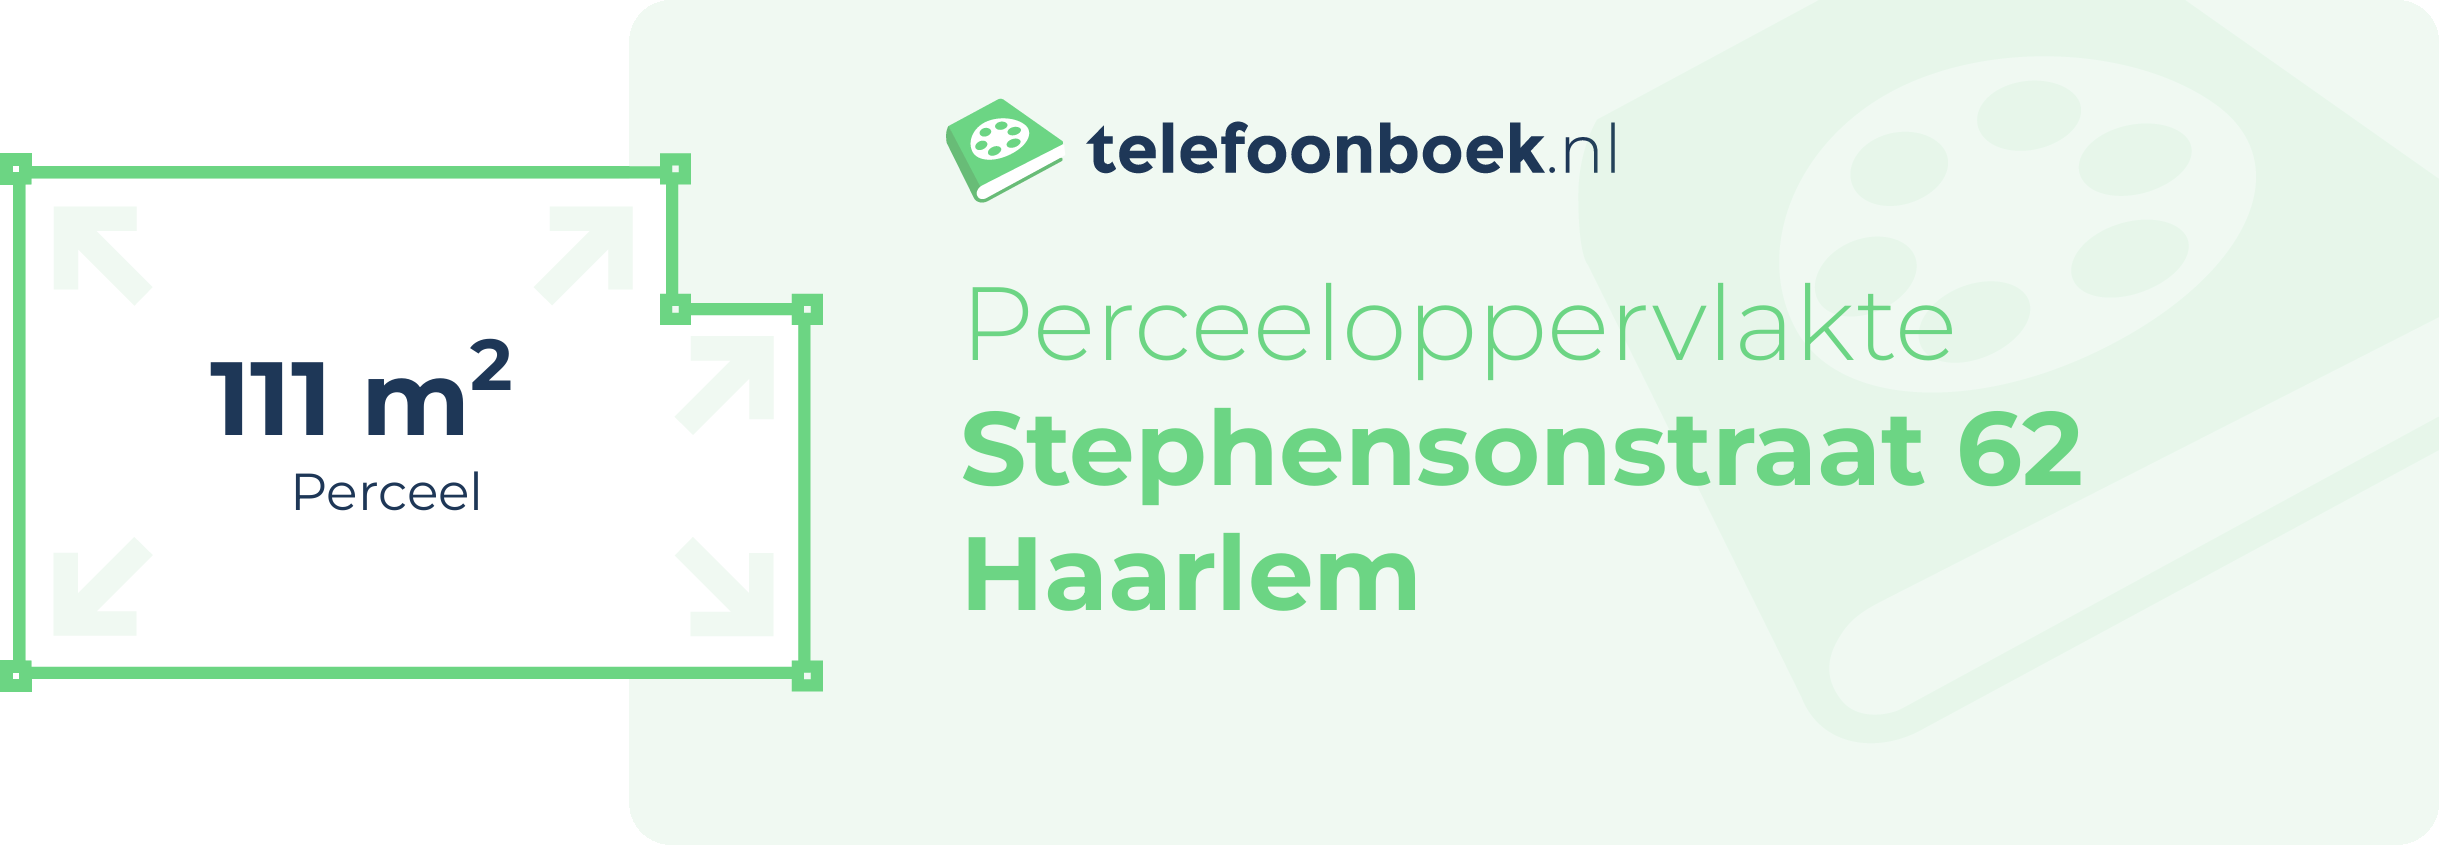 Perceeloppervlakte Stephensonstraat 62 Haarlem